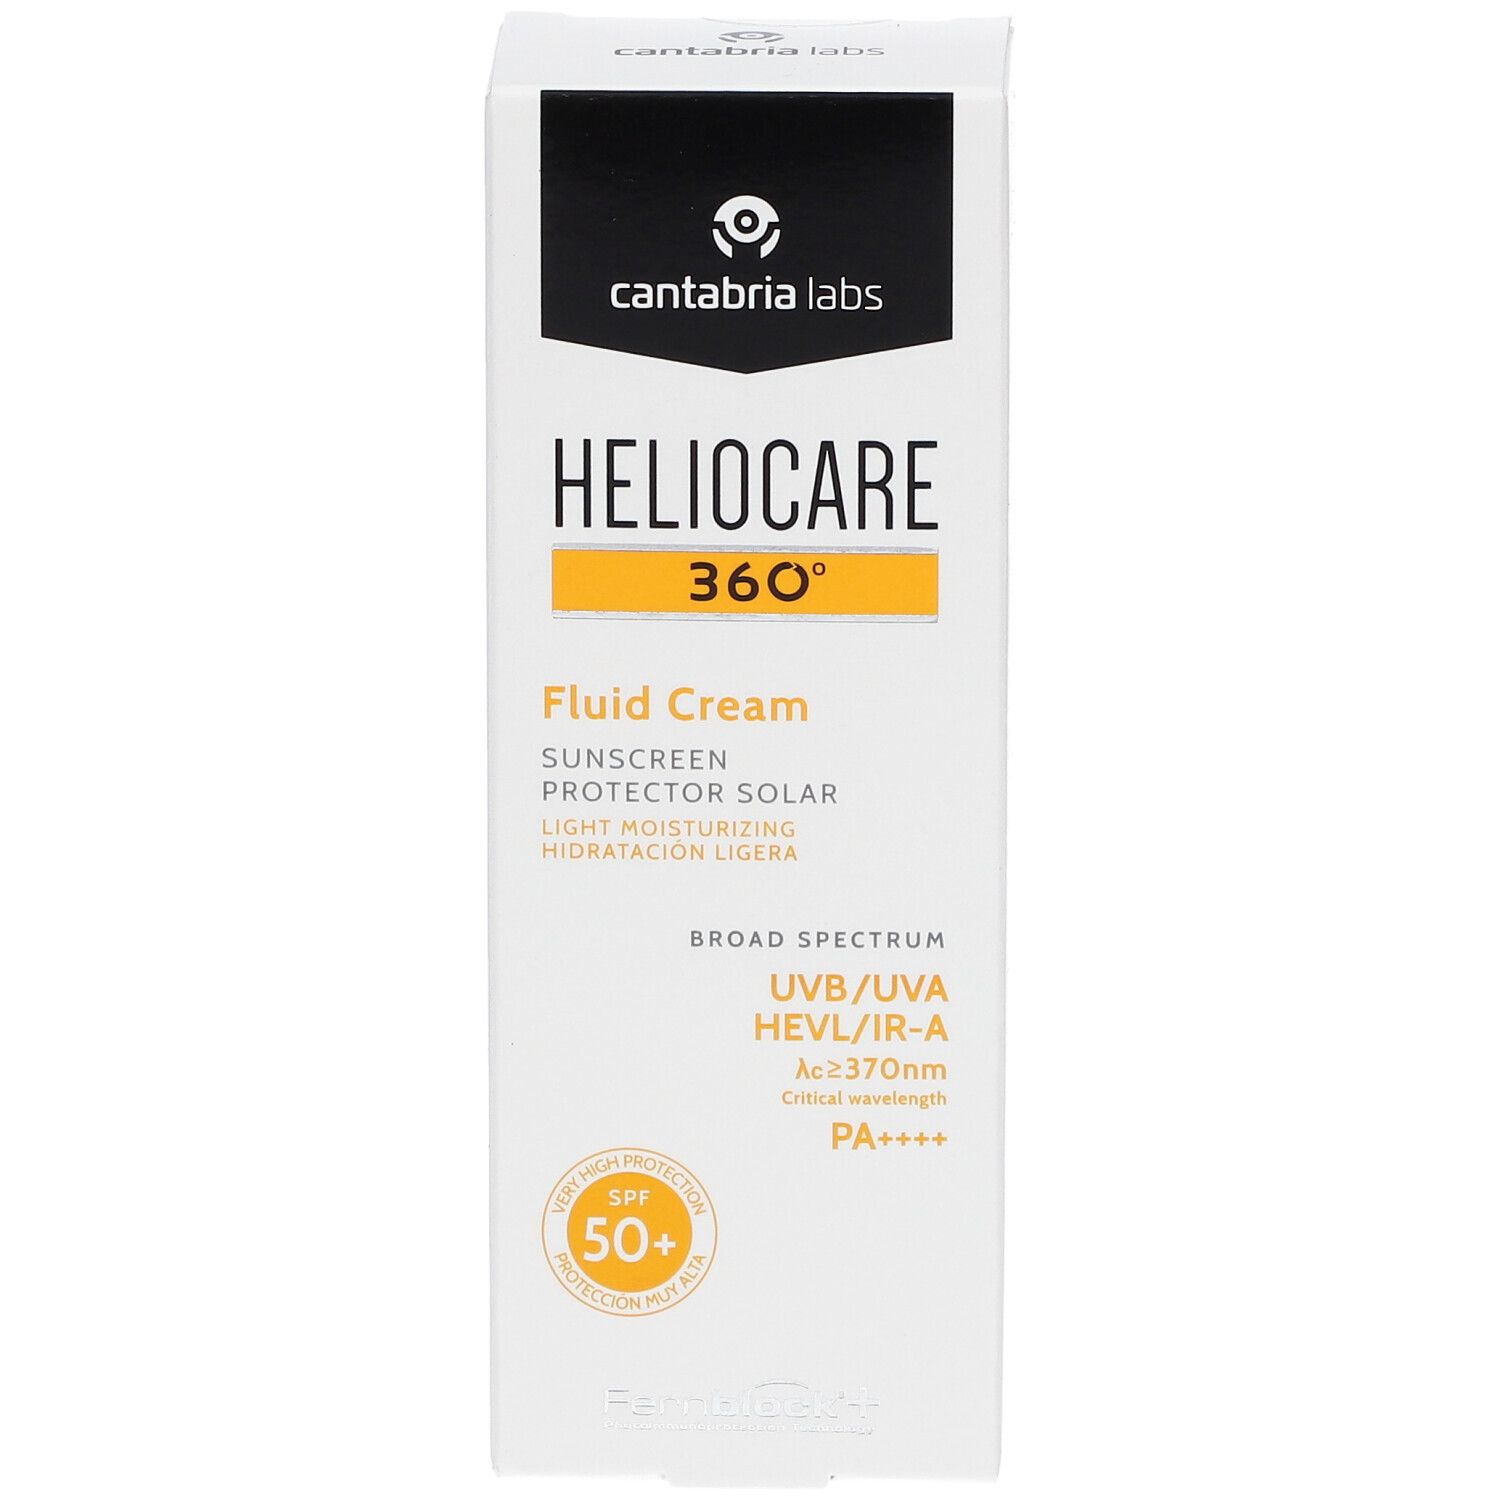 HELIOCARE® 360° Fluid Cream SPF 50+